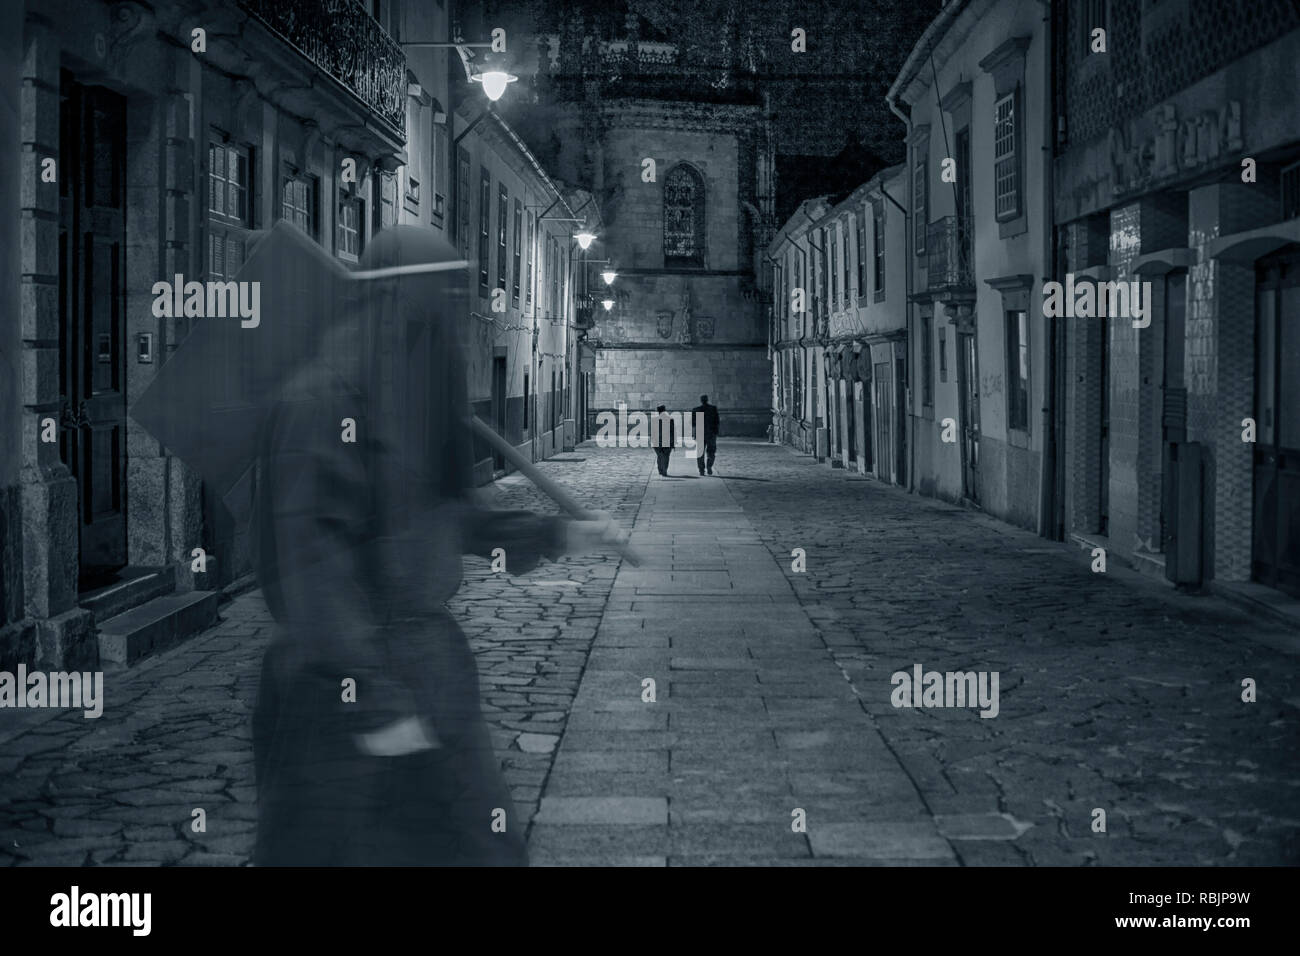 L'ancienne rue de la ville médiévale de nuit avec une mystérieuse figure sinistre en passant par en avant-plan Banque D'Images